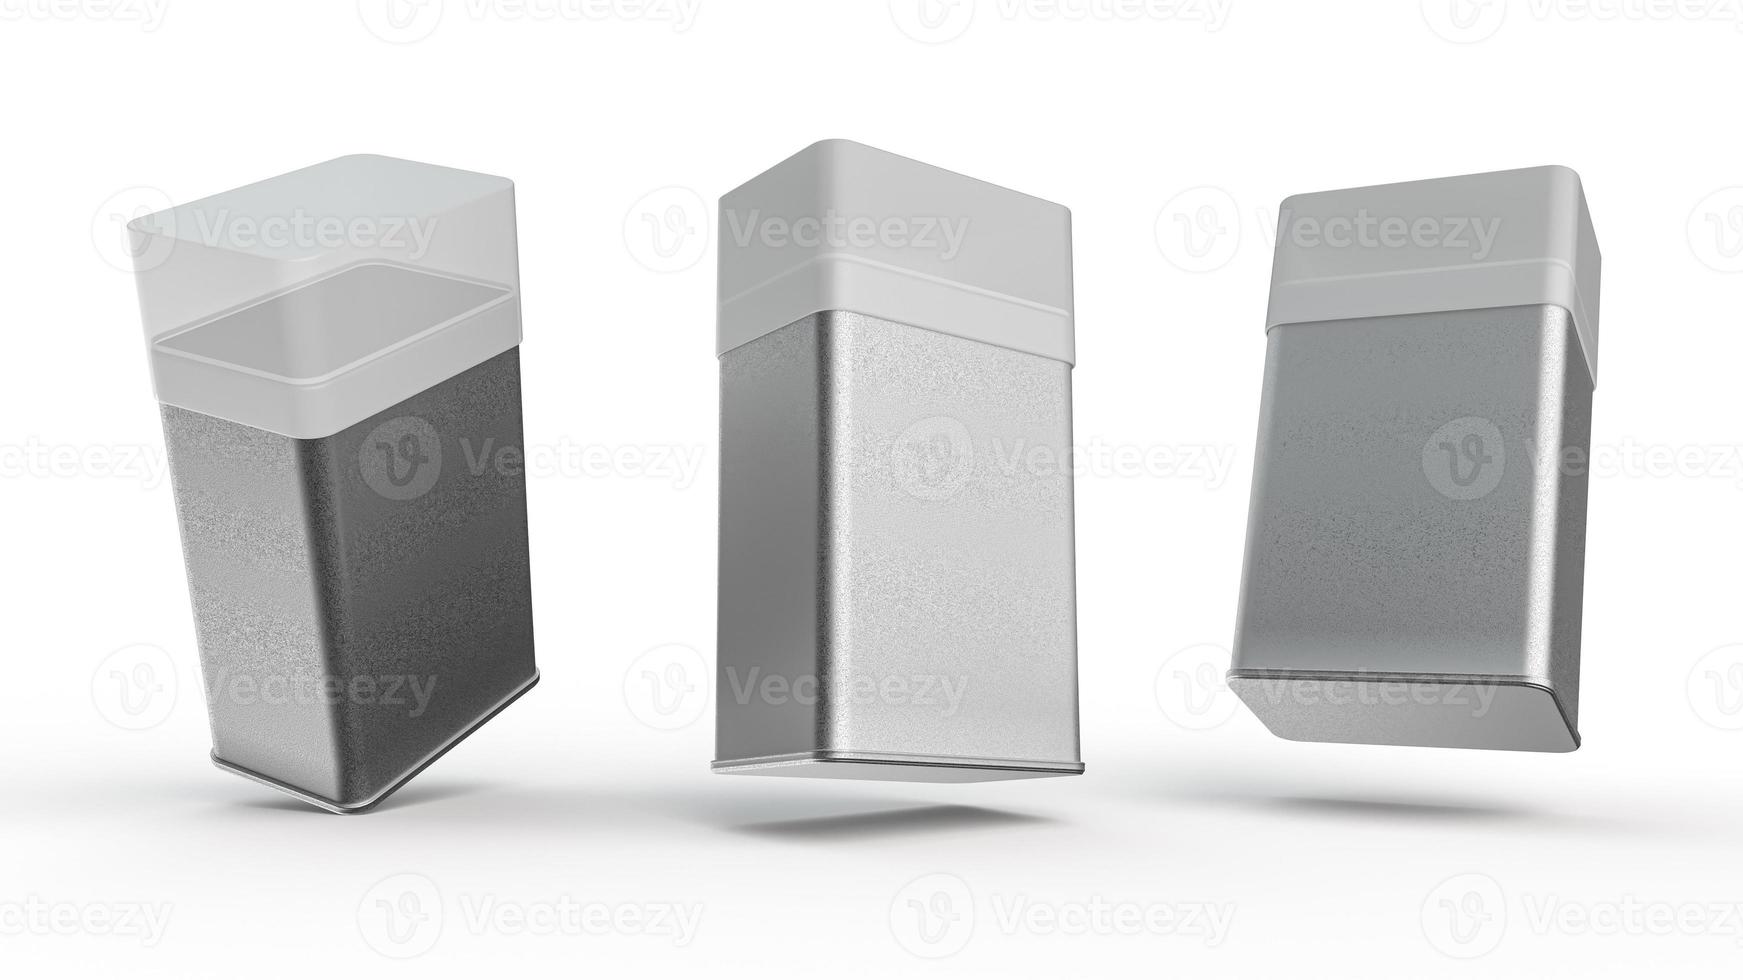 realistisk grov metall burk rektangel form behållare 3d illustration foto